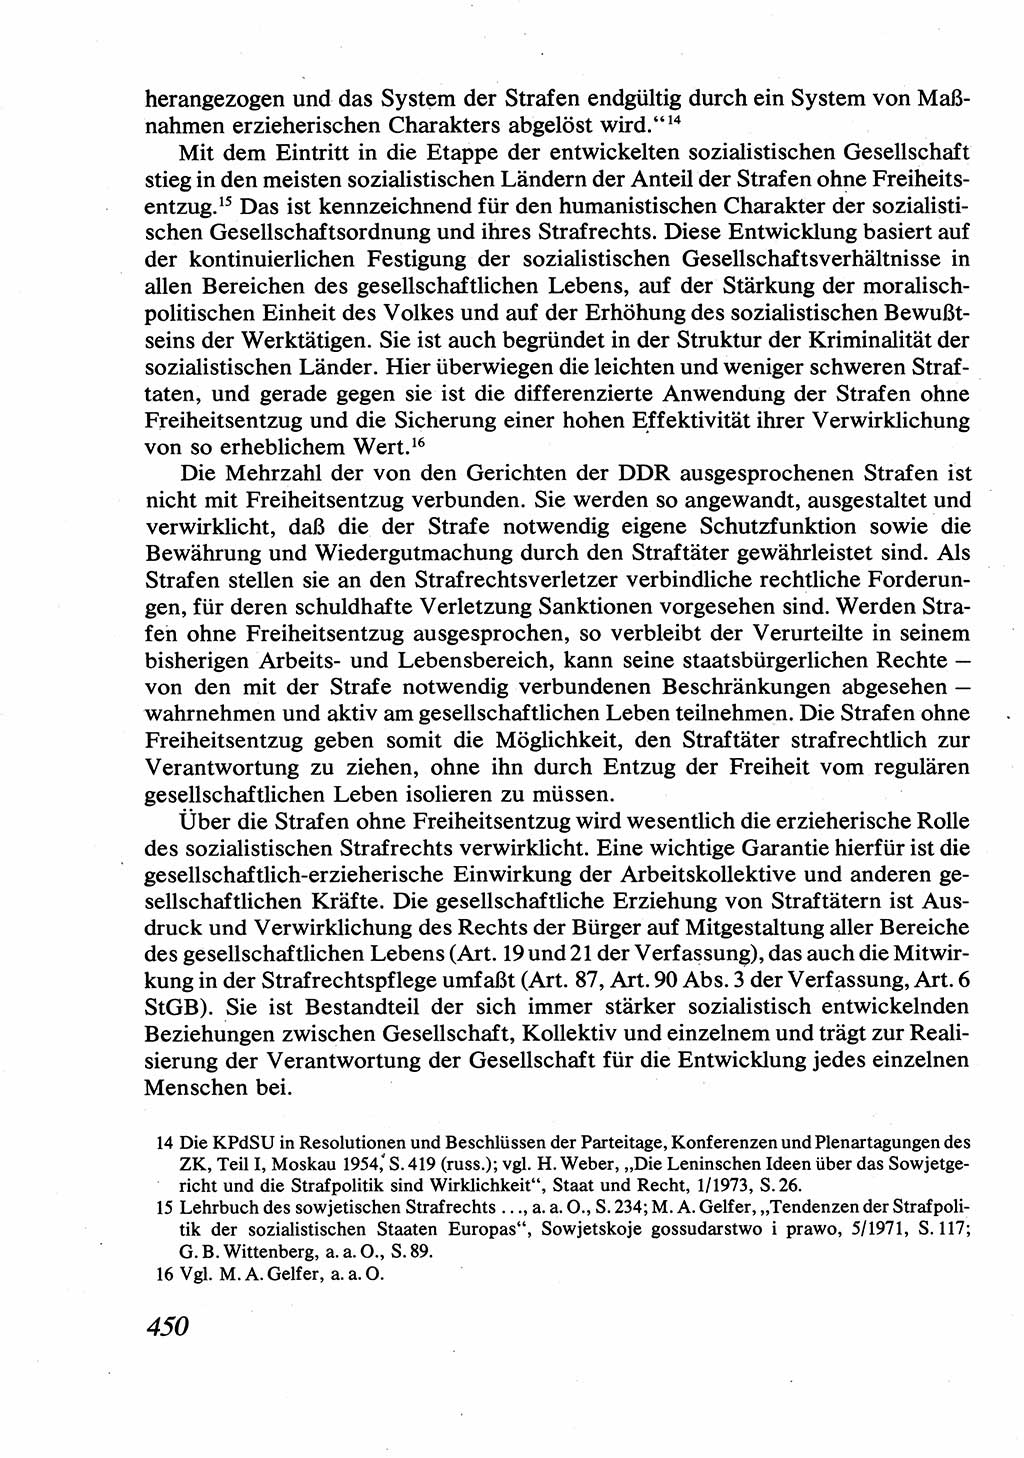 Strafrecht [Deutsche Demokratische Republik (DDR)], Allgemeiner Teil, Lehrbuch 1976, Seite 450 (Strafr. DDR AT Lb. 1976, S. 450)